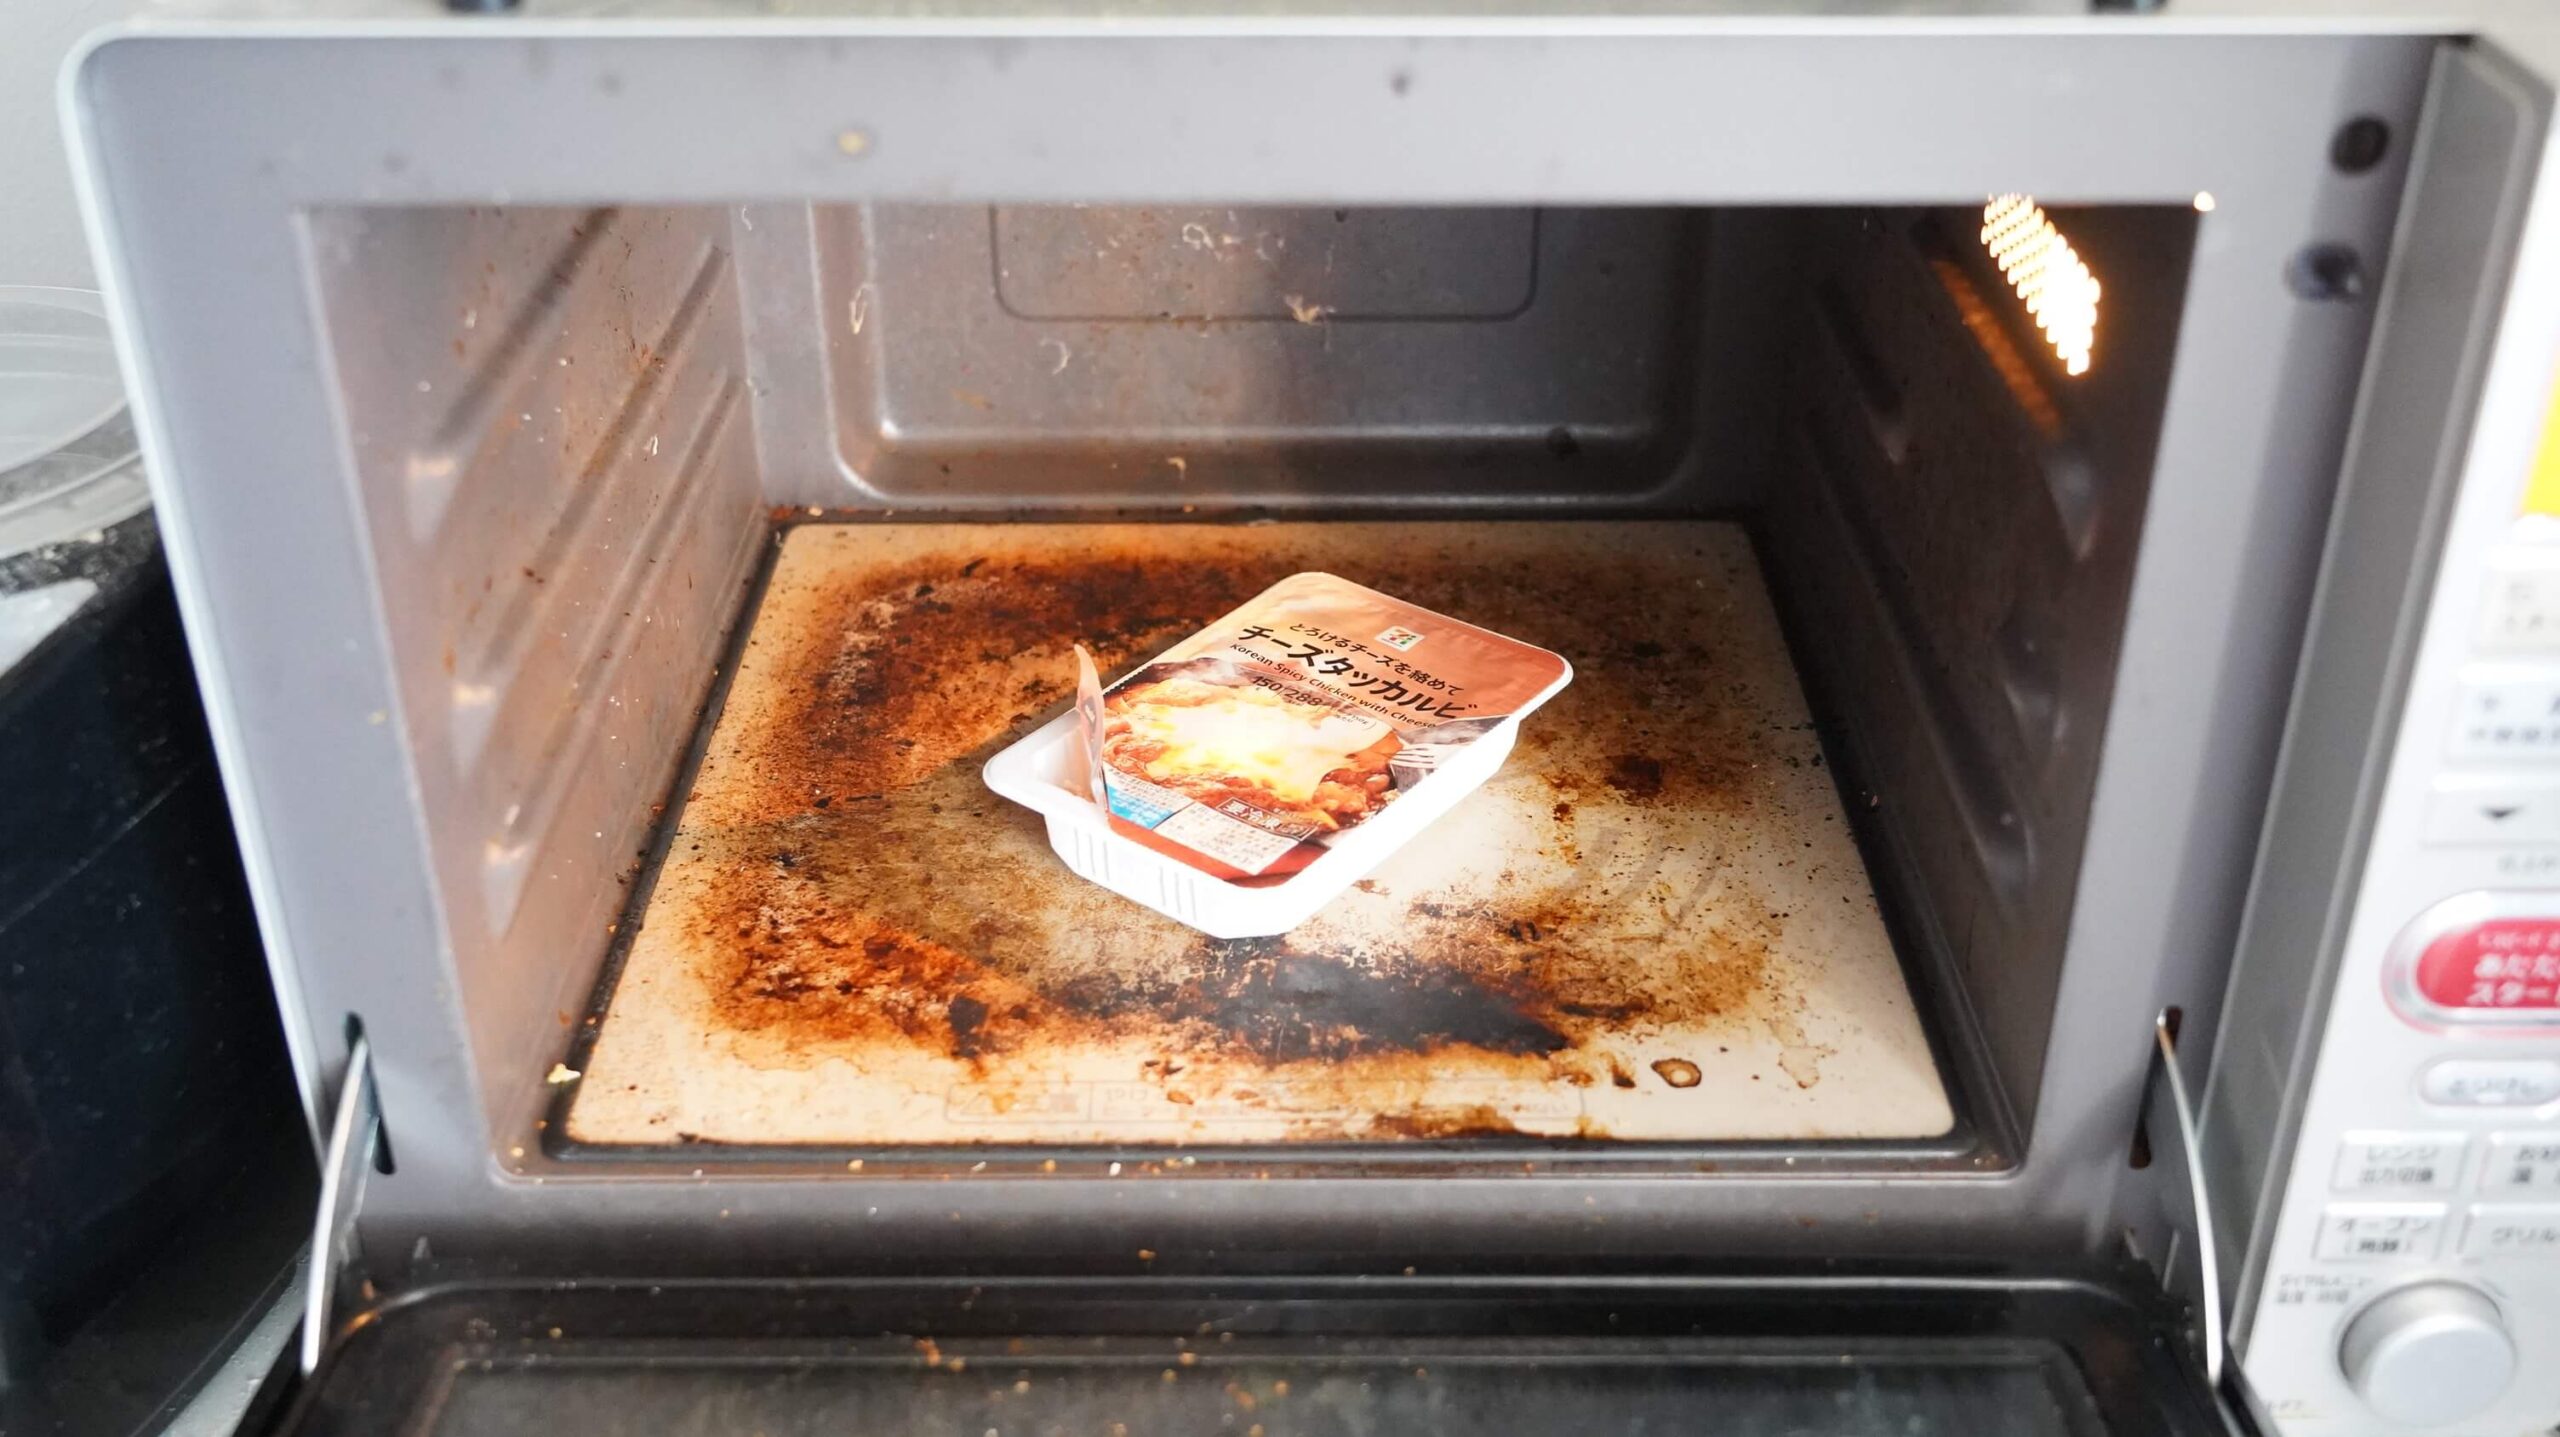 セブンイレブンの冷凍食品「とろけるチーズを絡めて・チーズダッカルビ」を電子レンジで加熱している写真